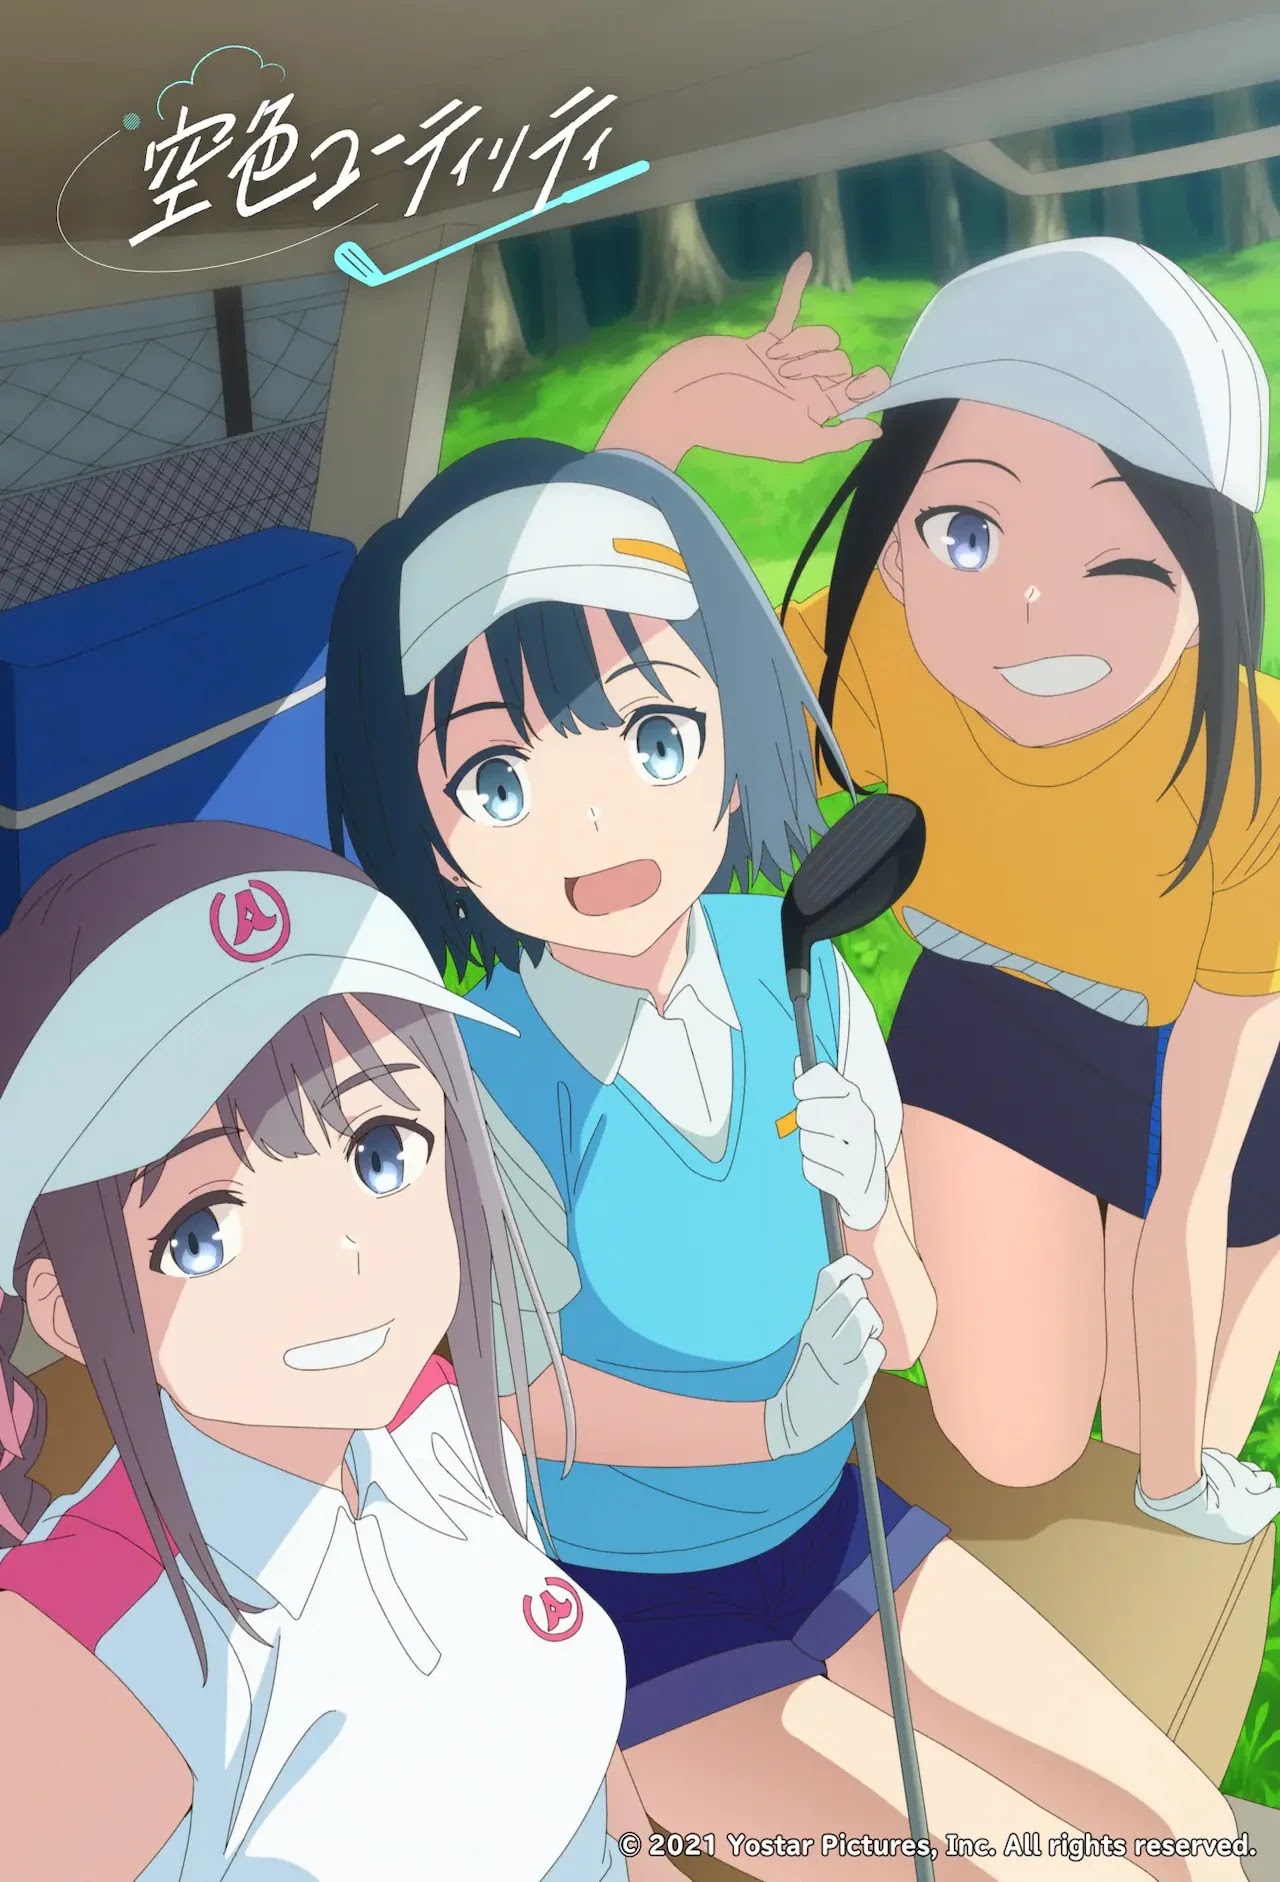 O Anime Original Sobre Golf, Sorairo Utility, revelou um novo Vídeo Promocional